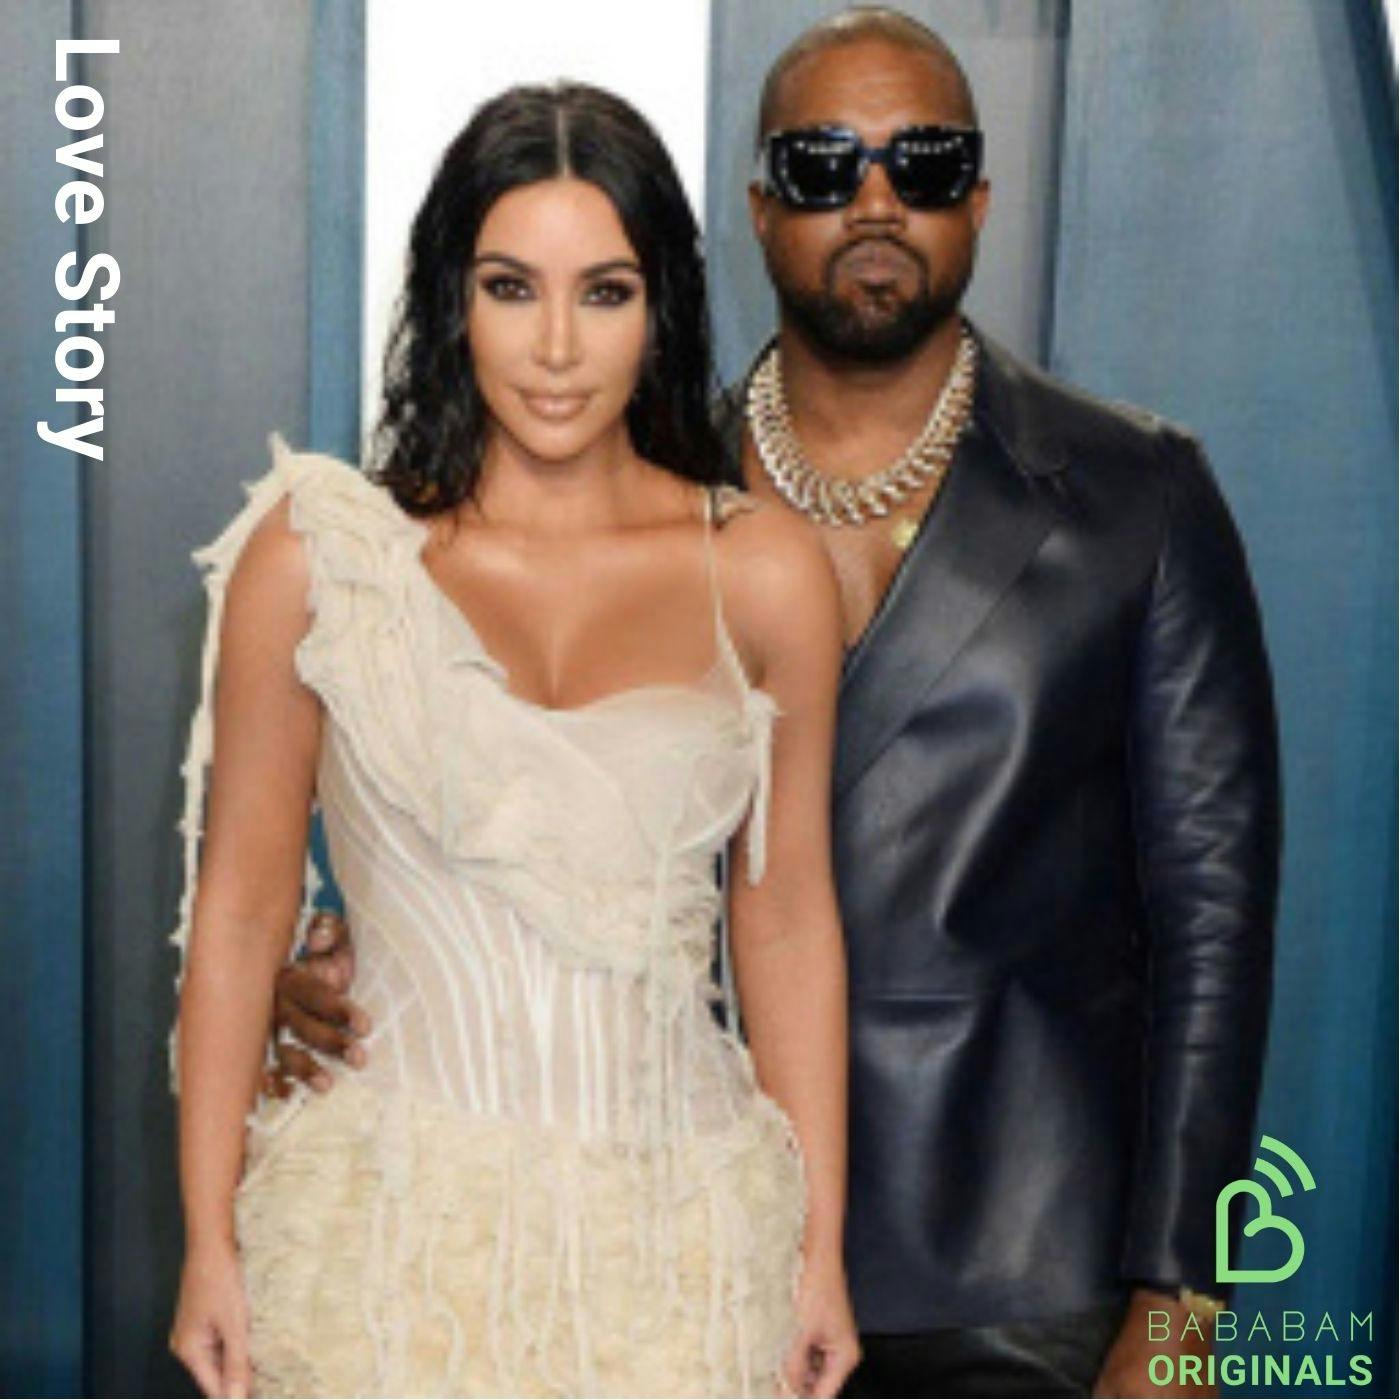 [SOUS LE FEU DES PROJECTEURS] Kim Kardashian et Kanye West, une histoire de téléréalité et de pop culture